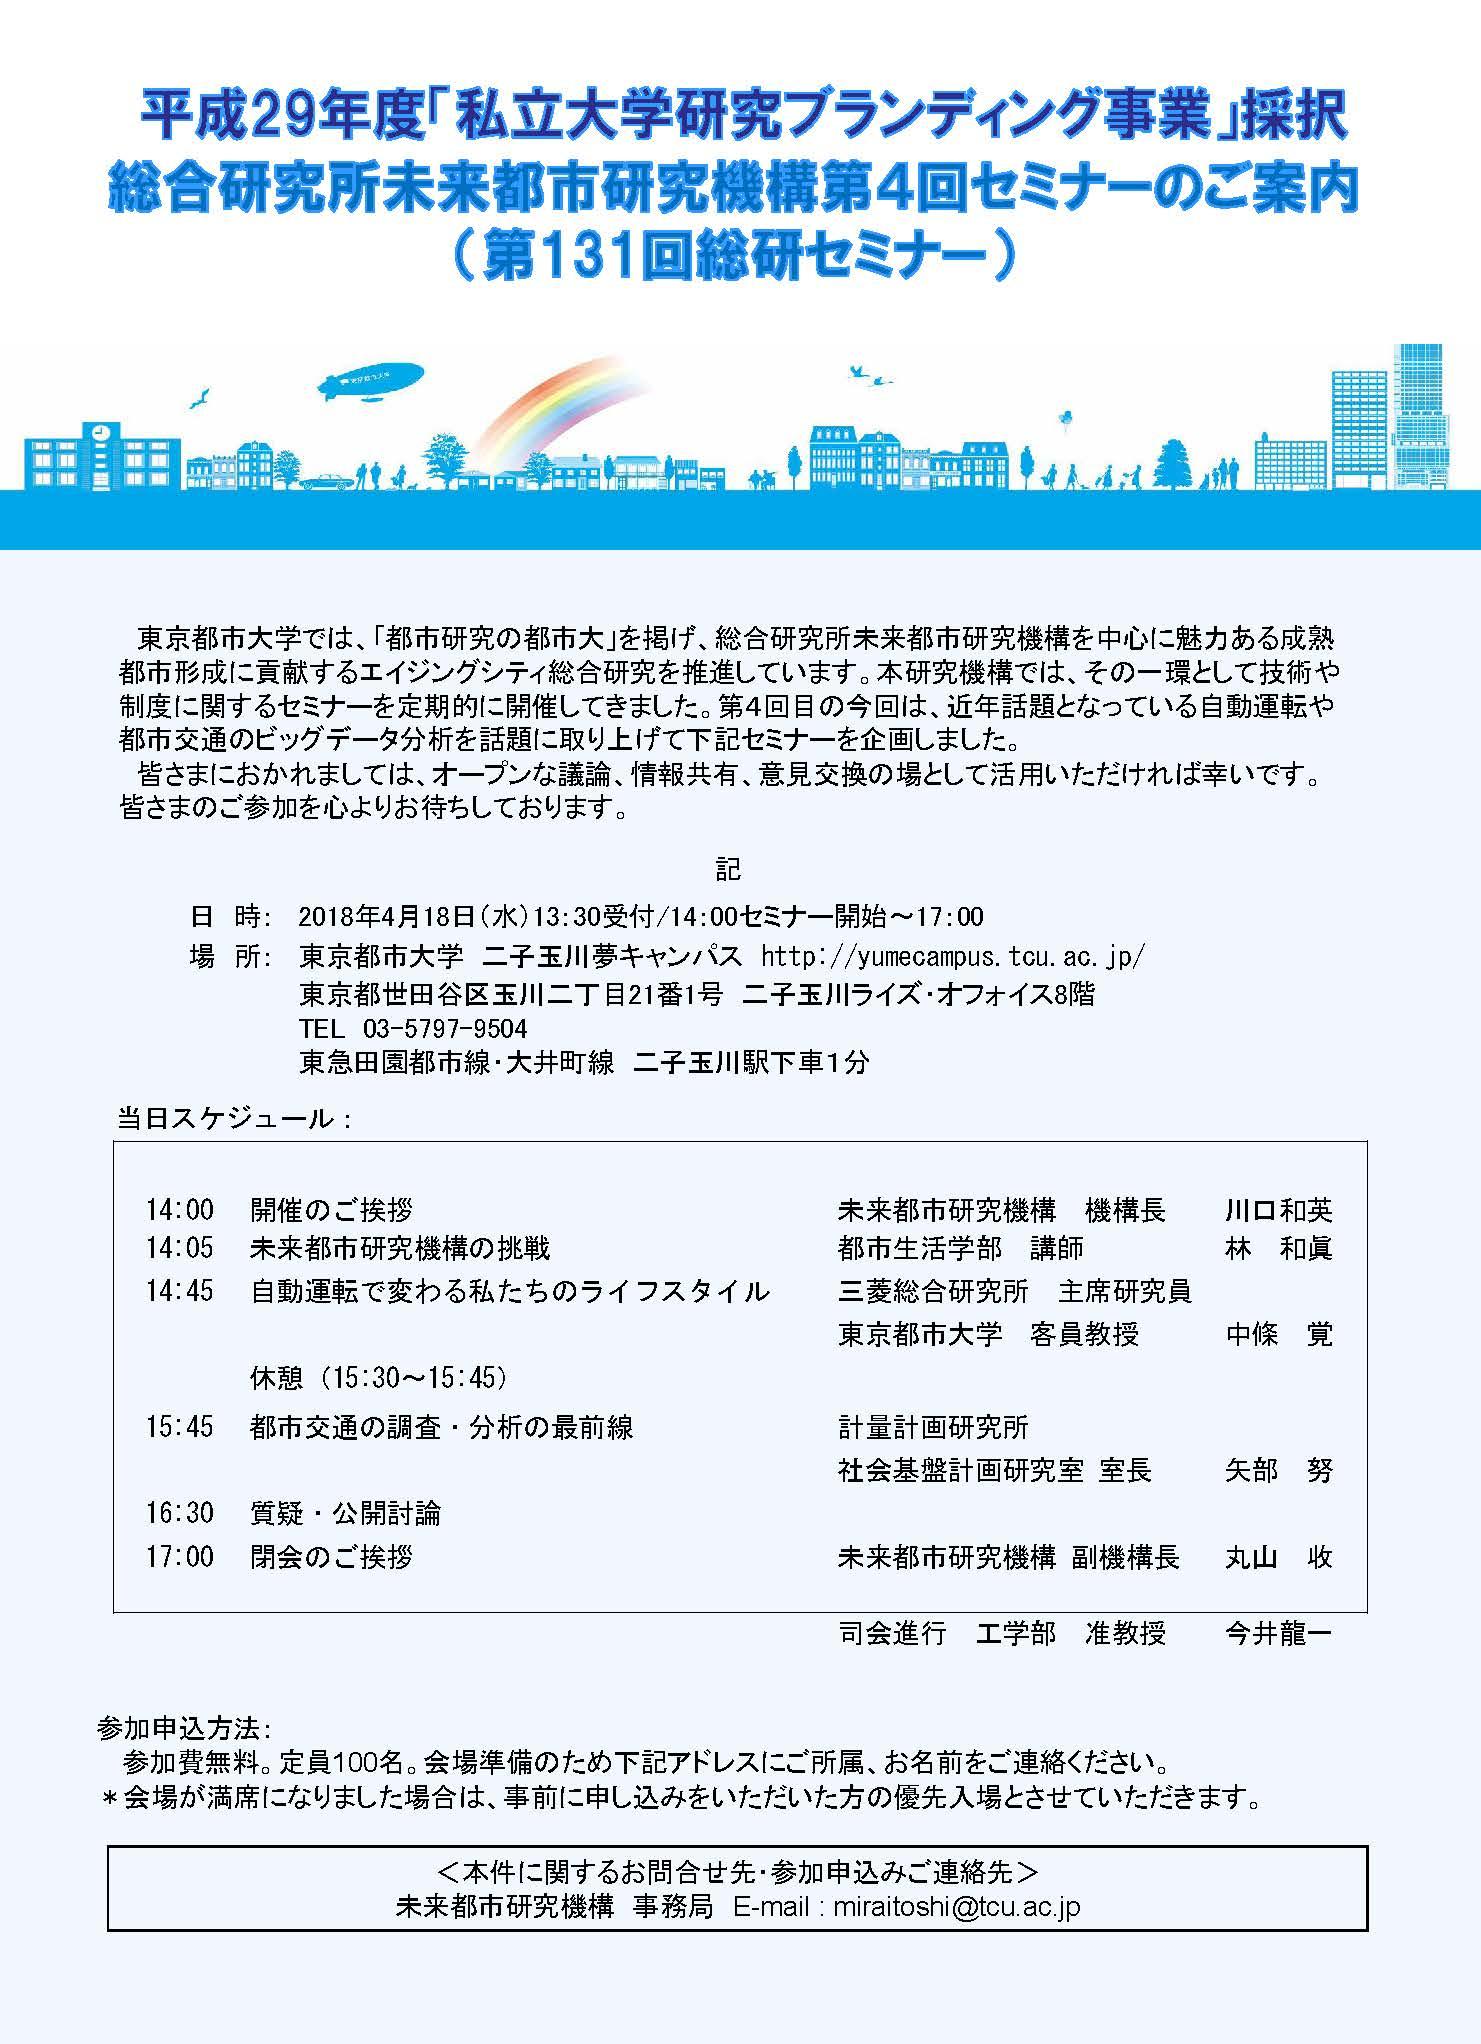 東京都市大学 総合研究所が4月18日に 未来都市研究機構第4回セミナー を開催 自動運転や都市交通に関する講演をメインに 18年4月9日 エキサイトニュース